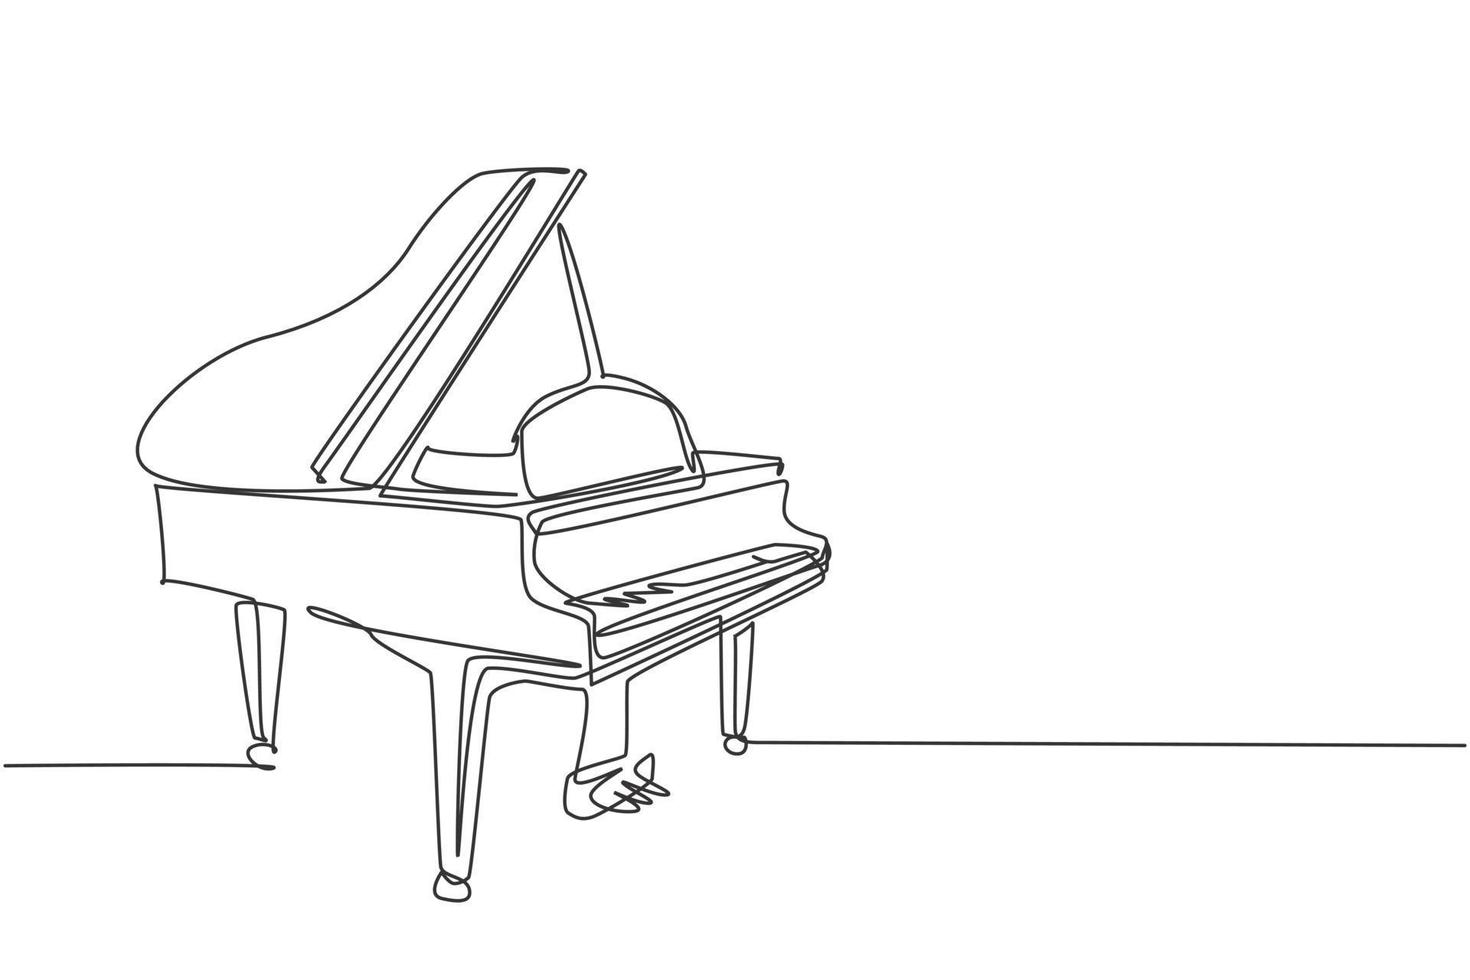 un dibujo de línea continua de un piano de cola de madera de lujo. concepto de instrumentos de música clásica. Ilustración de vector gráfico de diseño de dibujo de línea única de moda